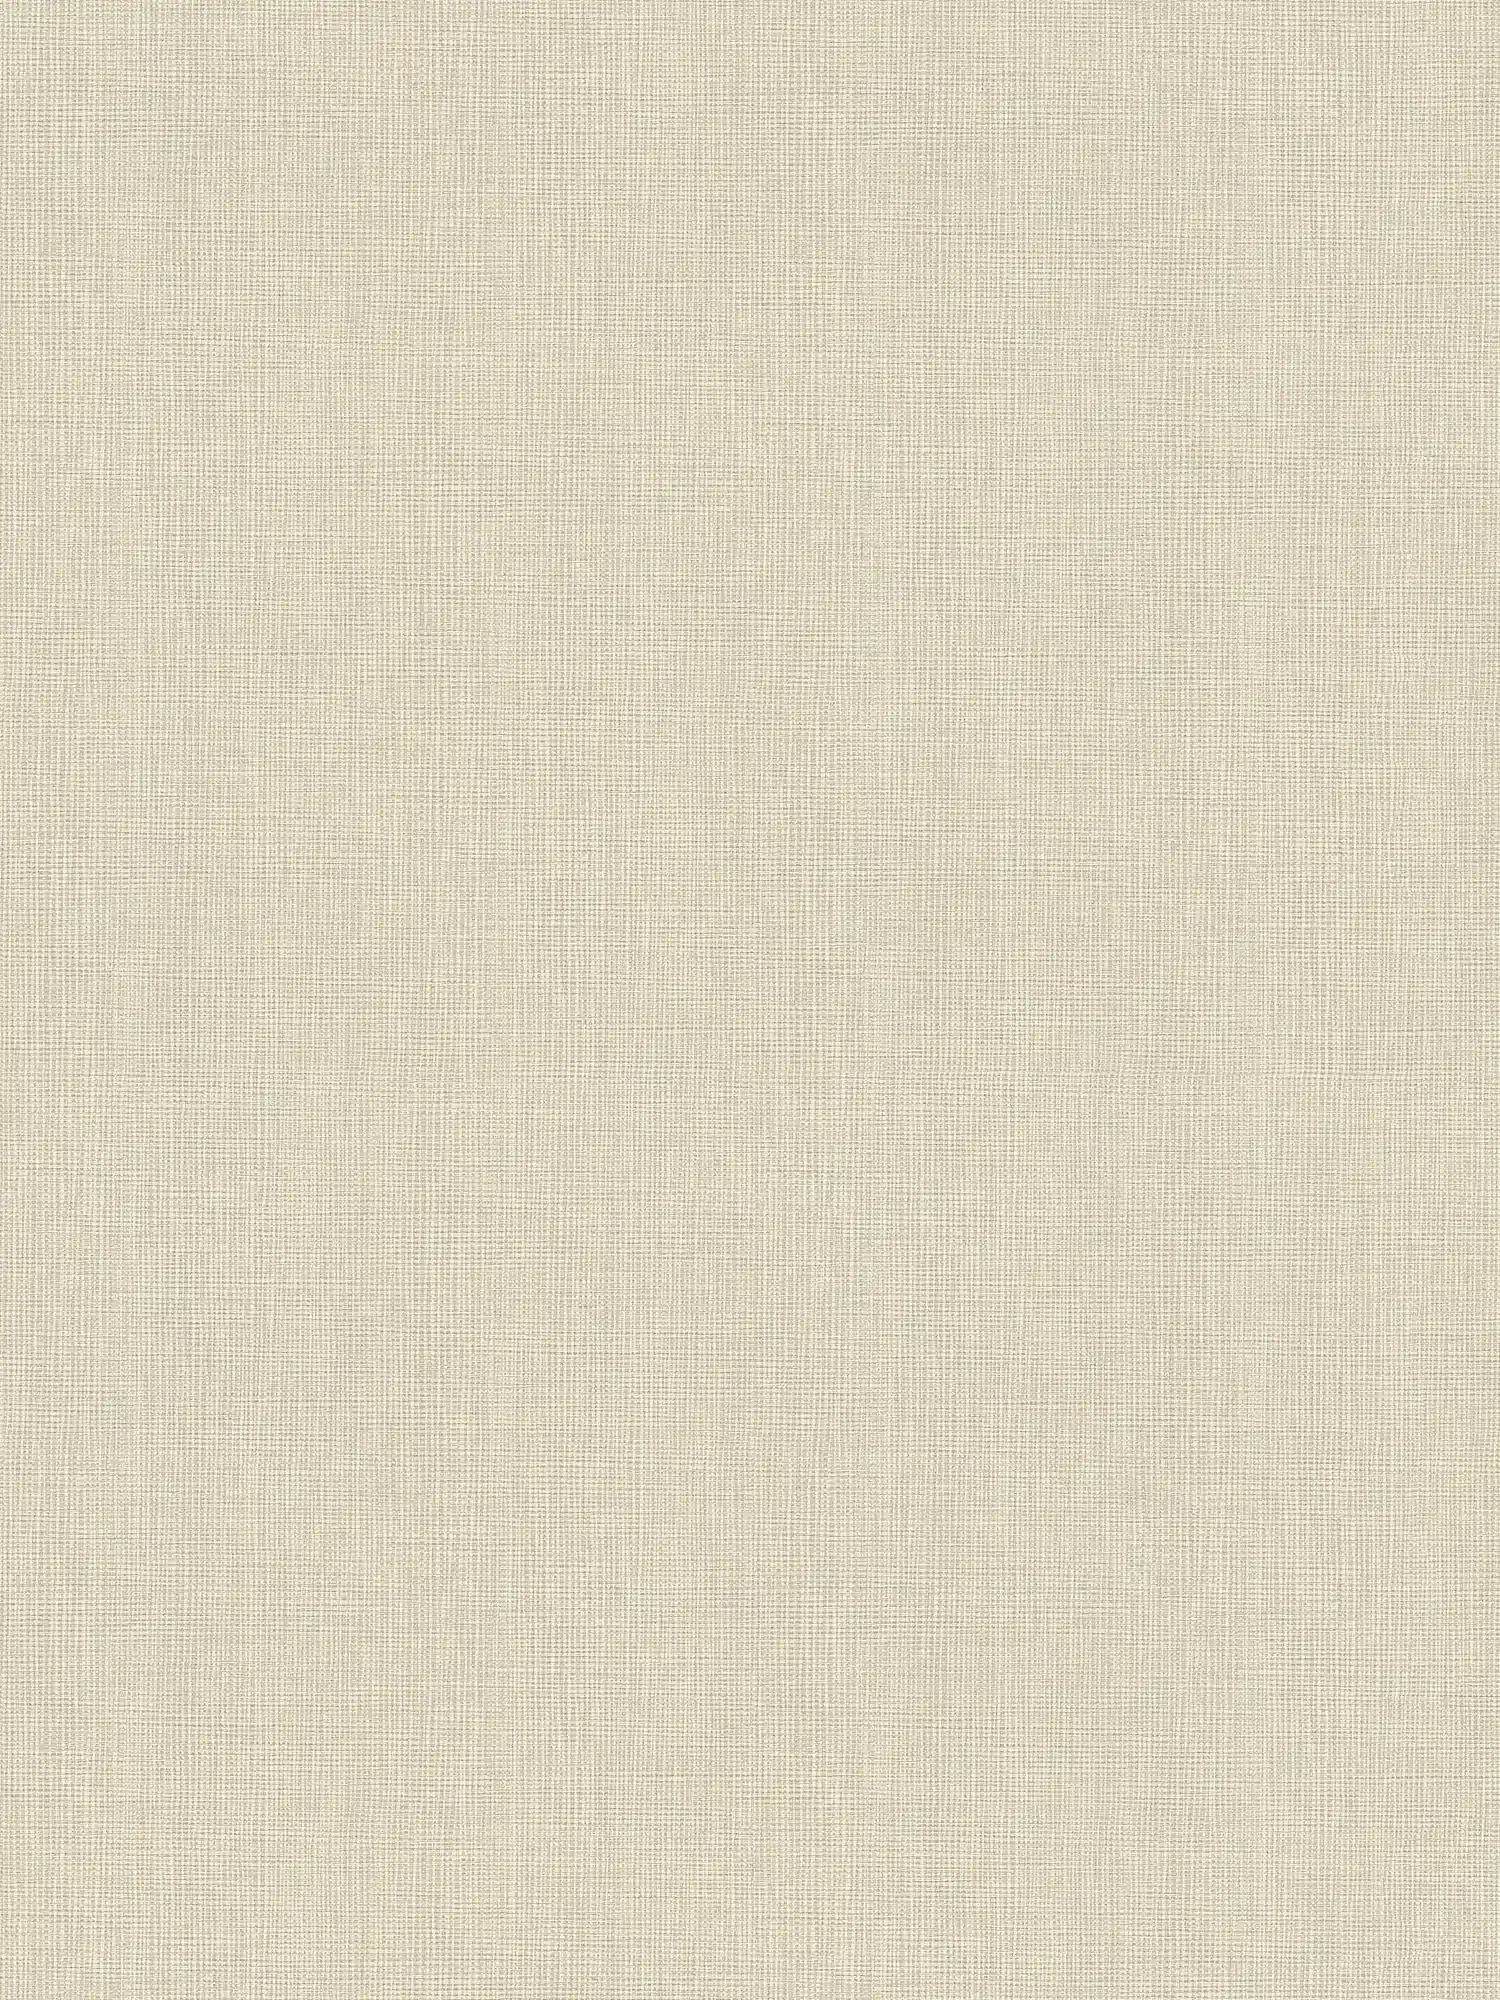 Papel pintado liso no tejido de color beige con motivos textiles
